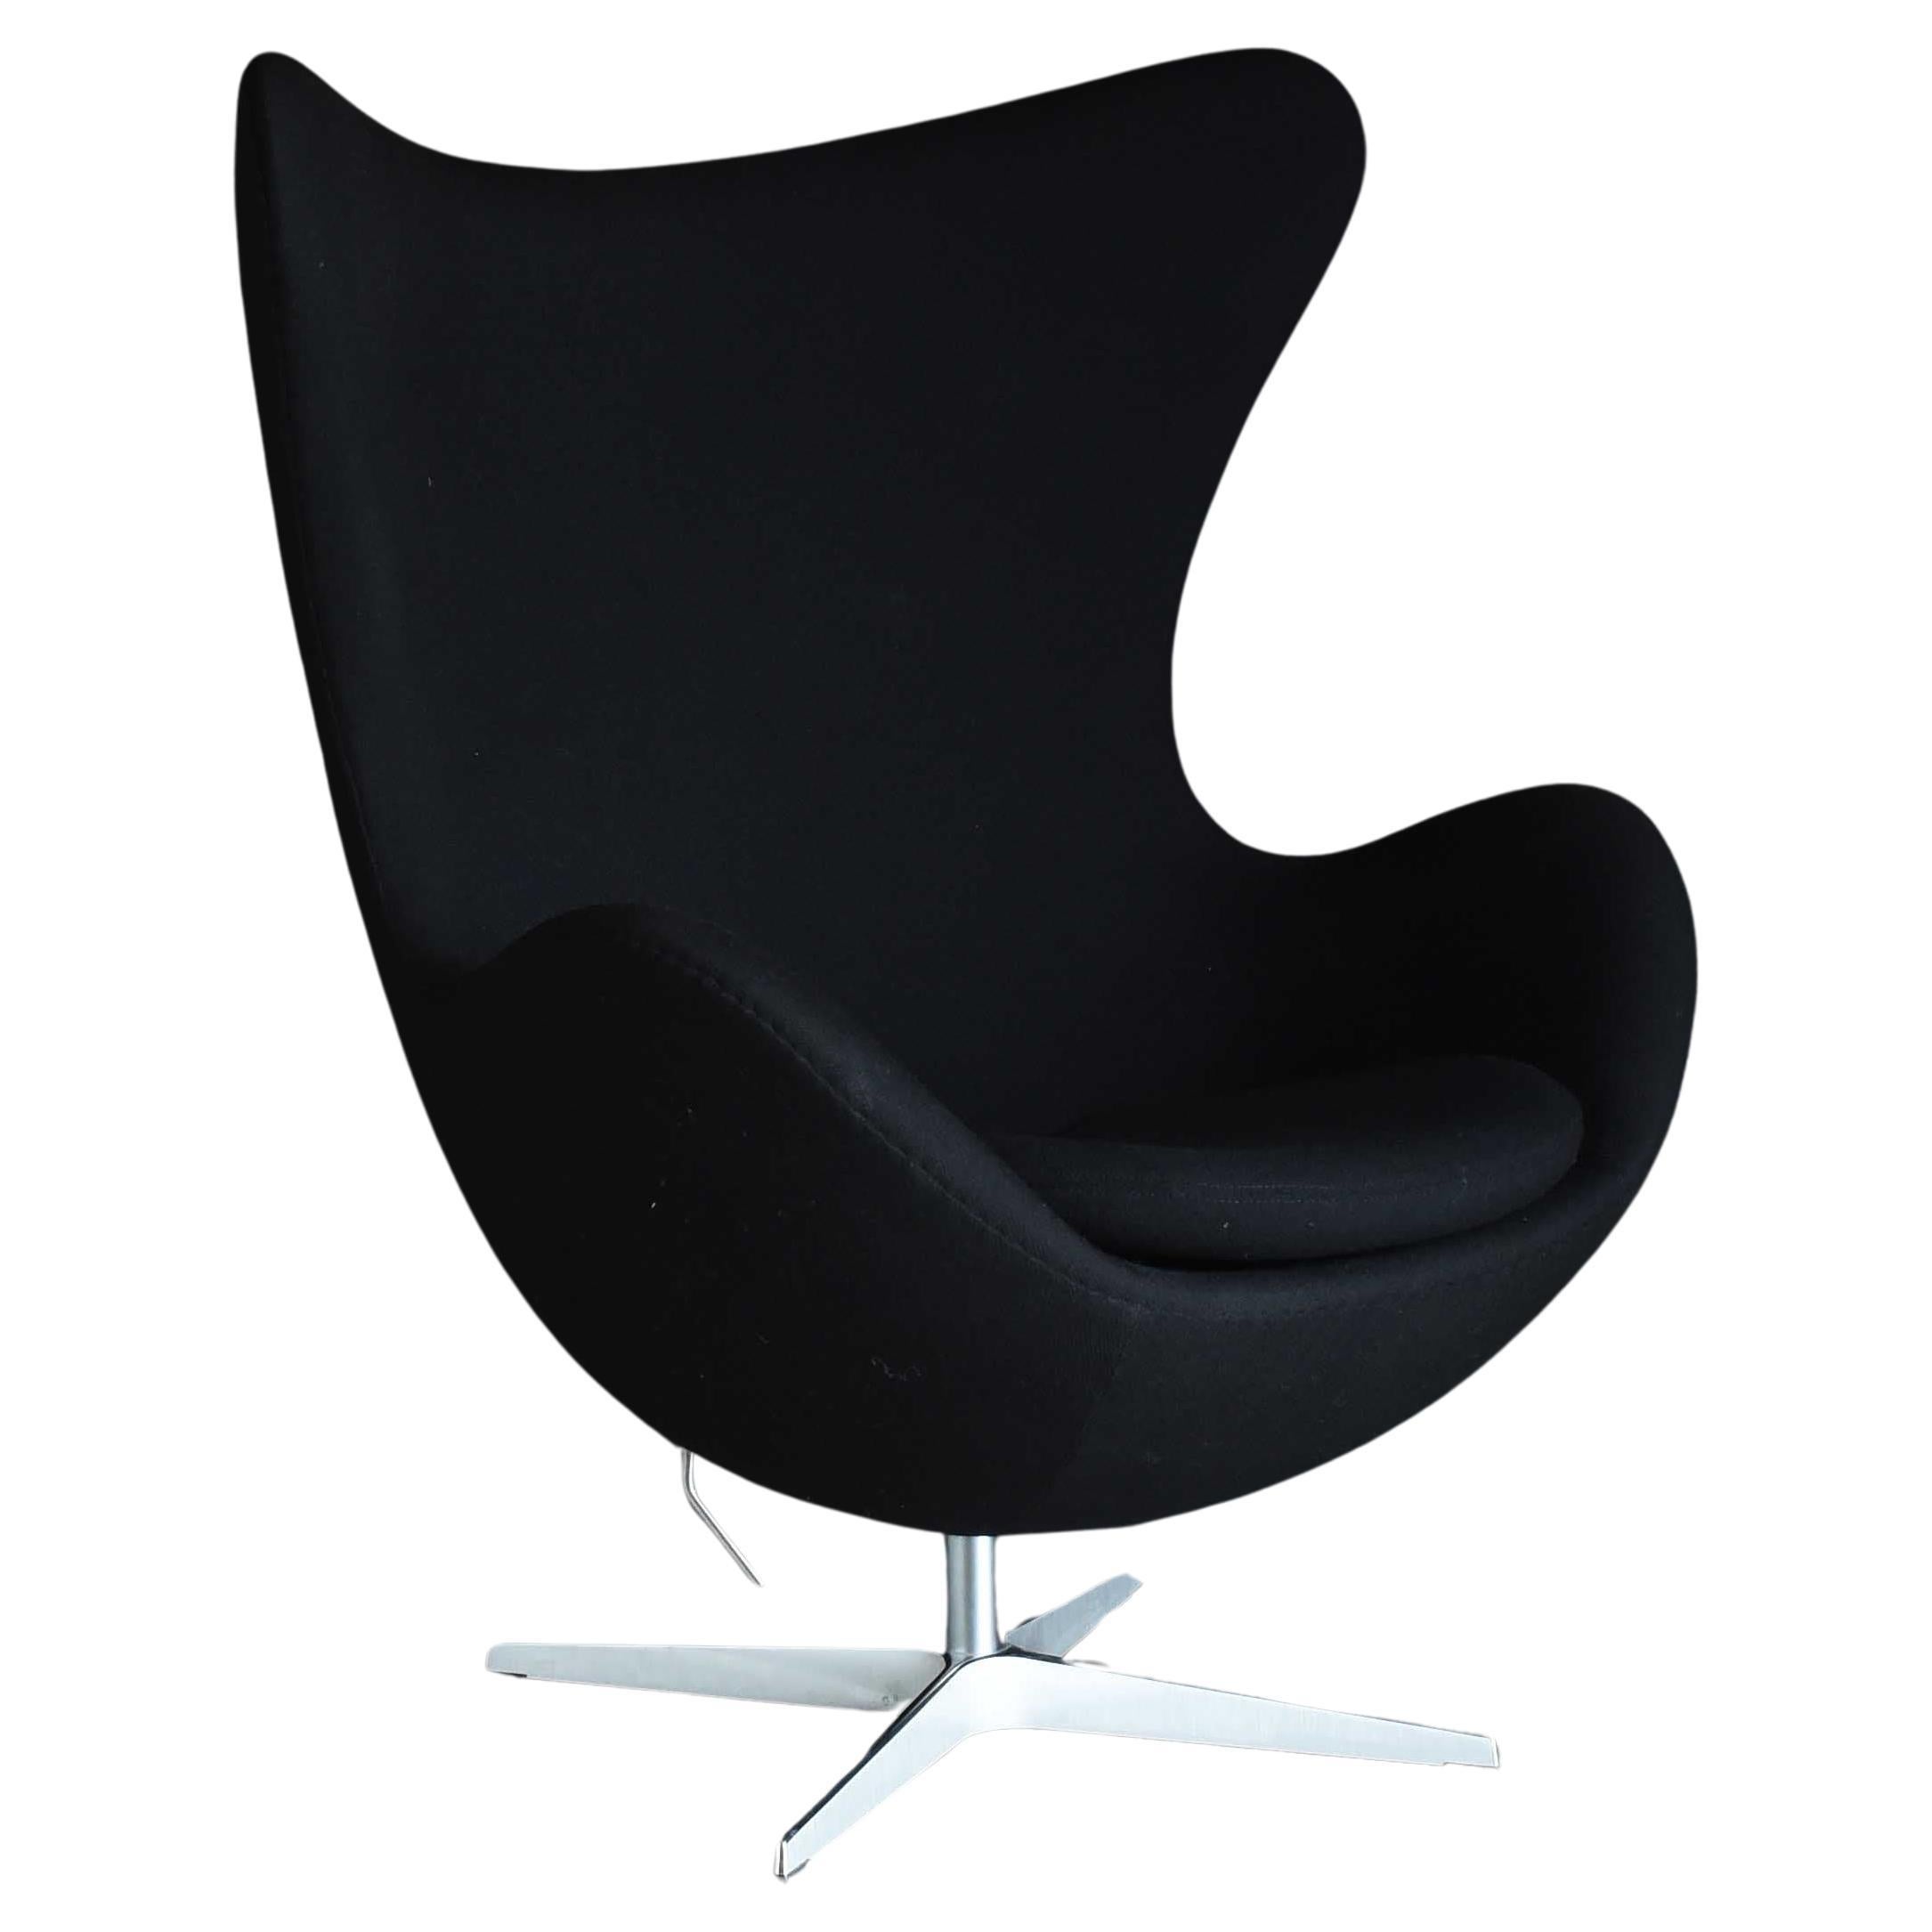 Chaise longue Egg, moderne du milieu du siècle dernier, Arne Jacobsen, 3316